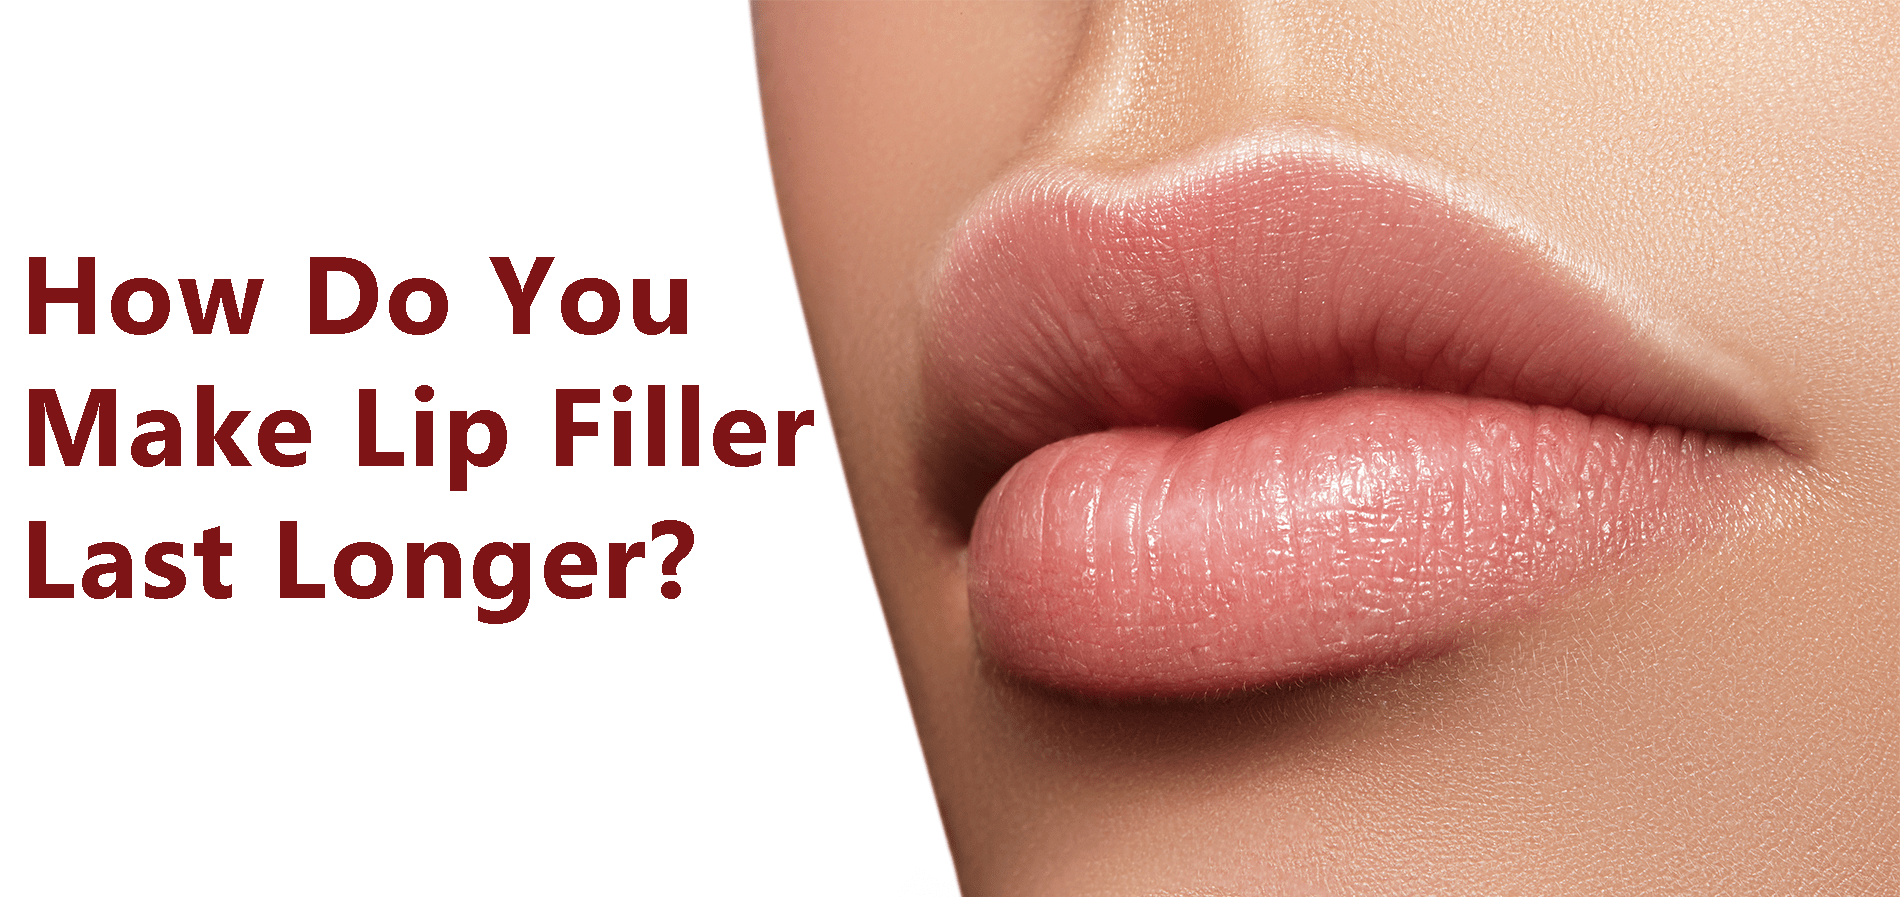 How To Make Lip Filler Last Longer